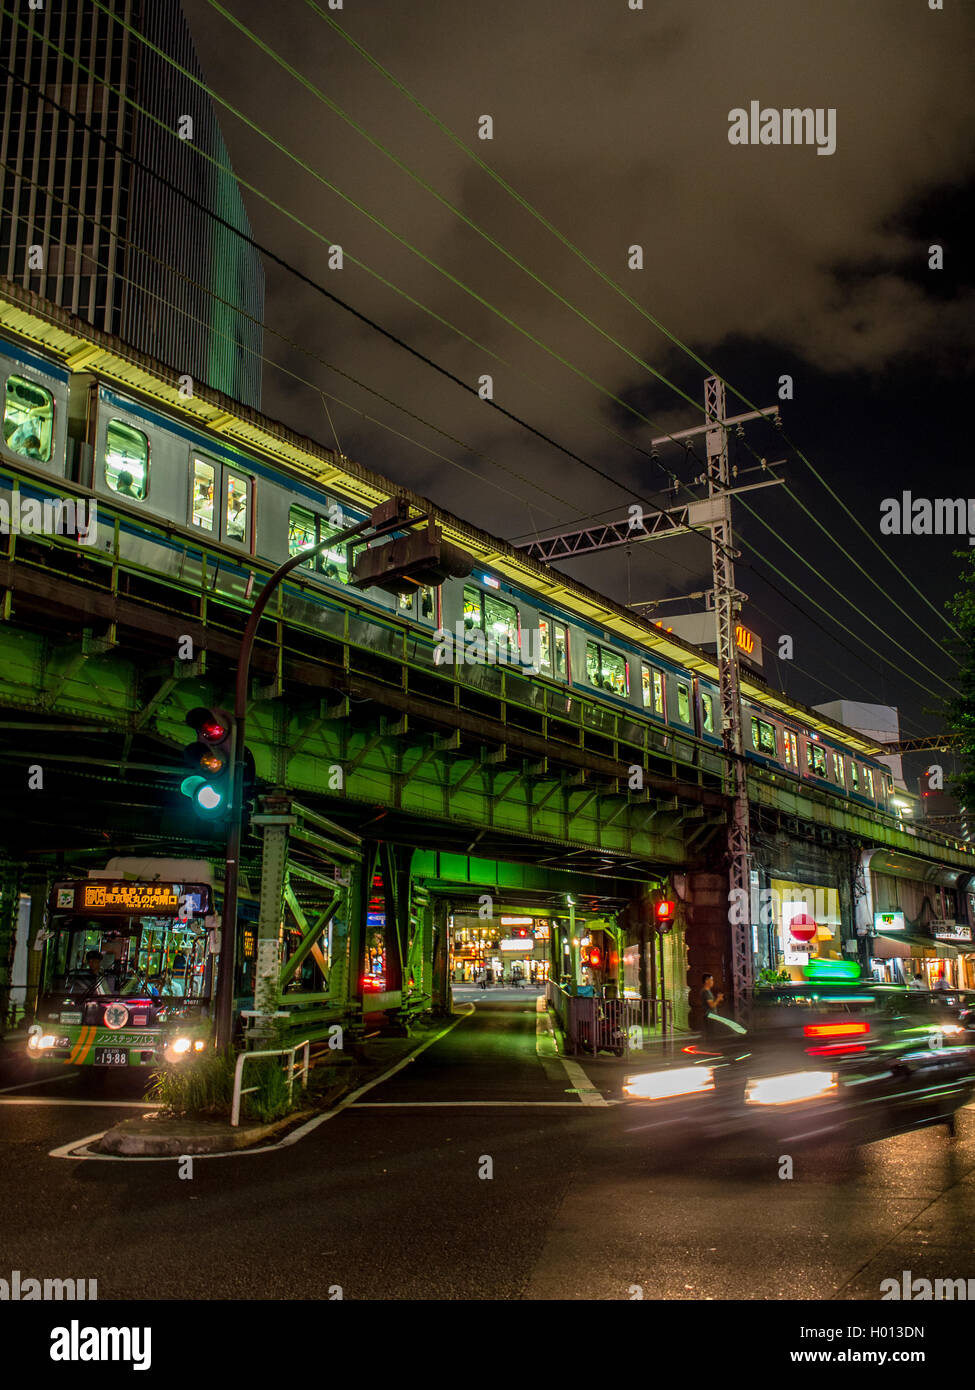 Una linea Yamanote treno passeggeri su ferrovia sopraelevata al di sopra di strade trafficate, una città giapponese di notte, Yurakucho, Tokyo, Giappone Foto Stock